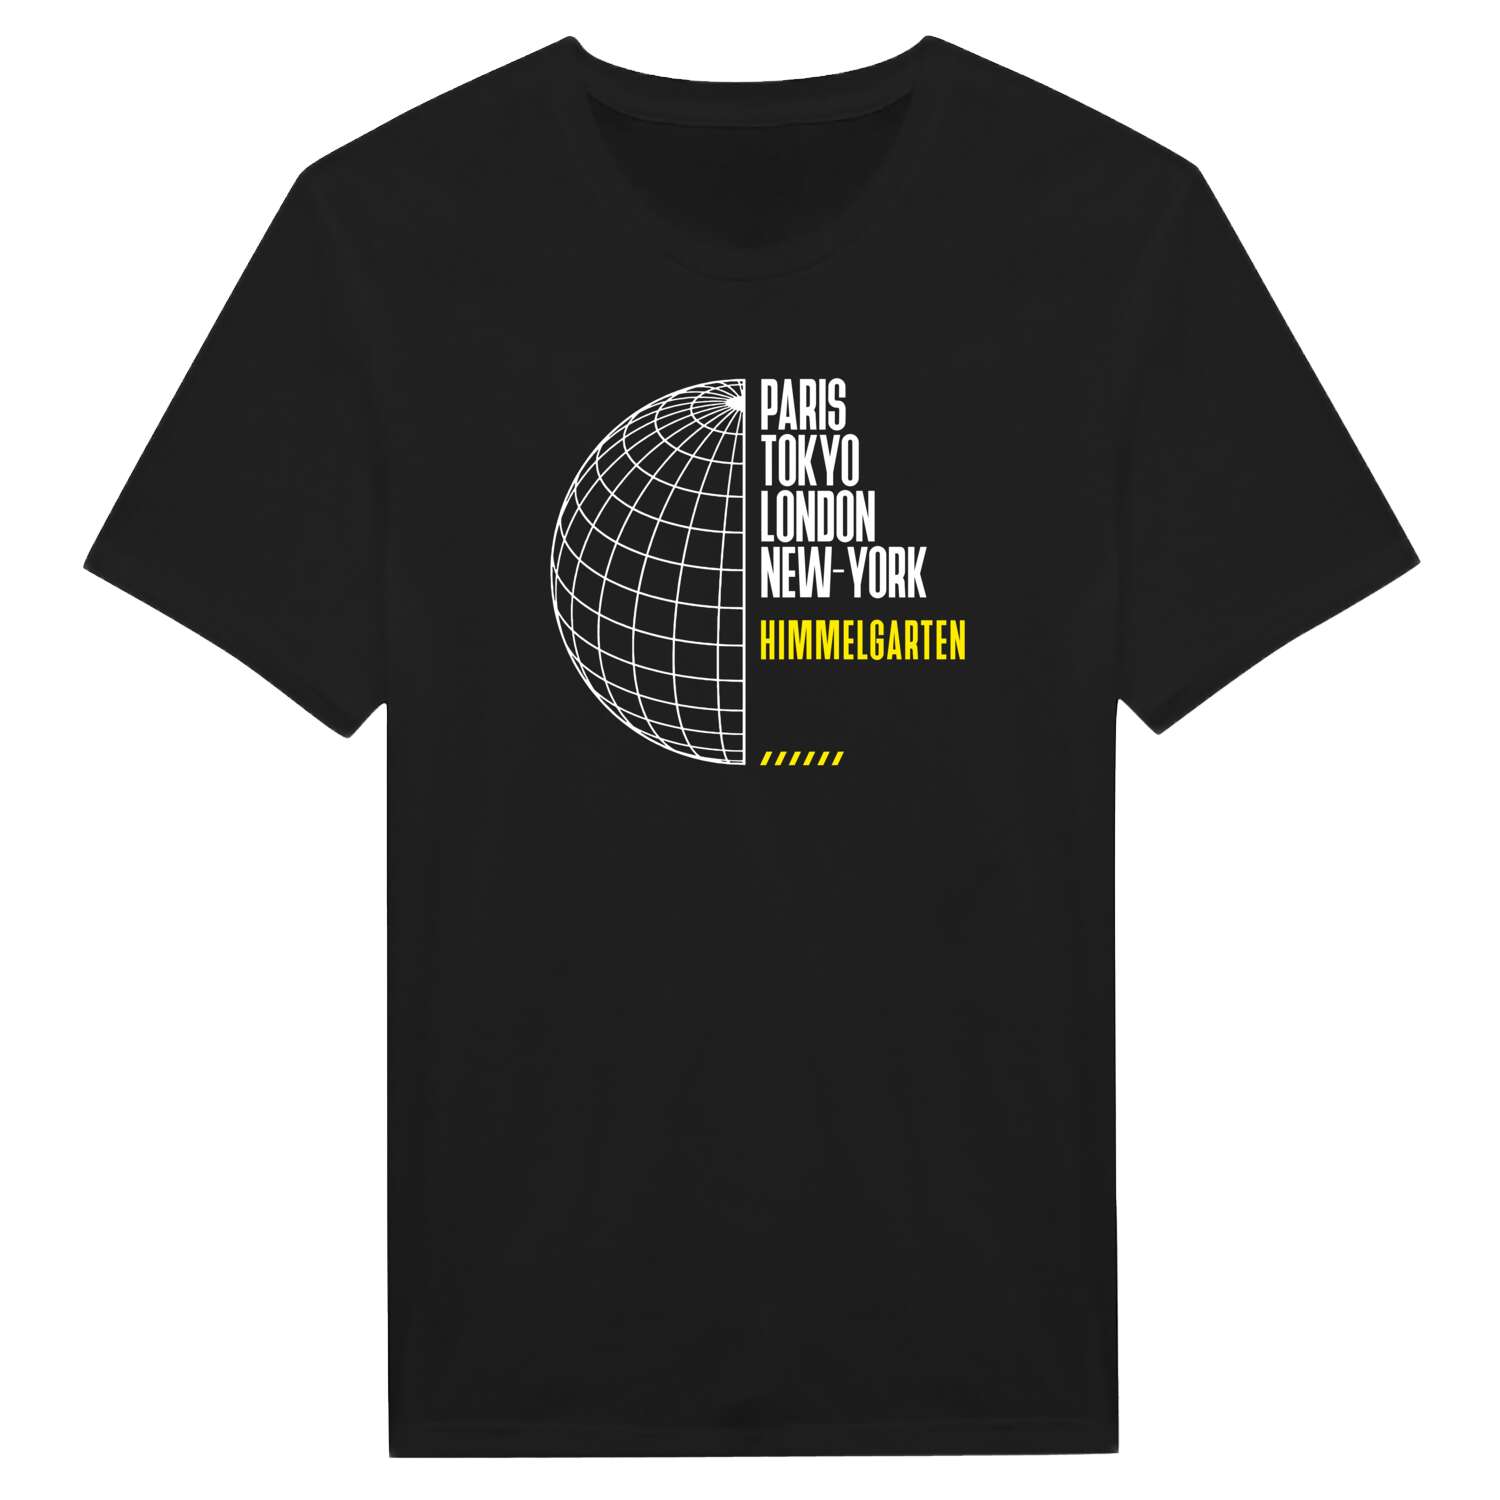 Himmelgarten T-Shirt »Paris Tokyo London«